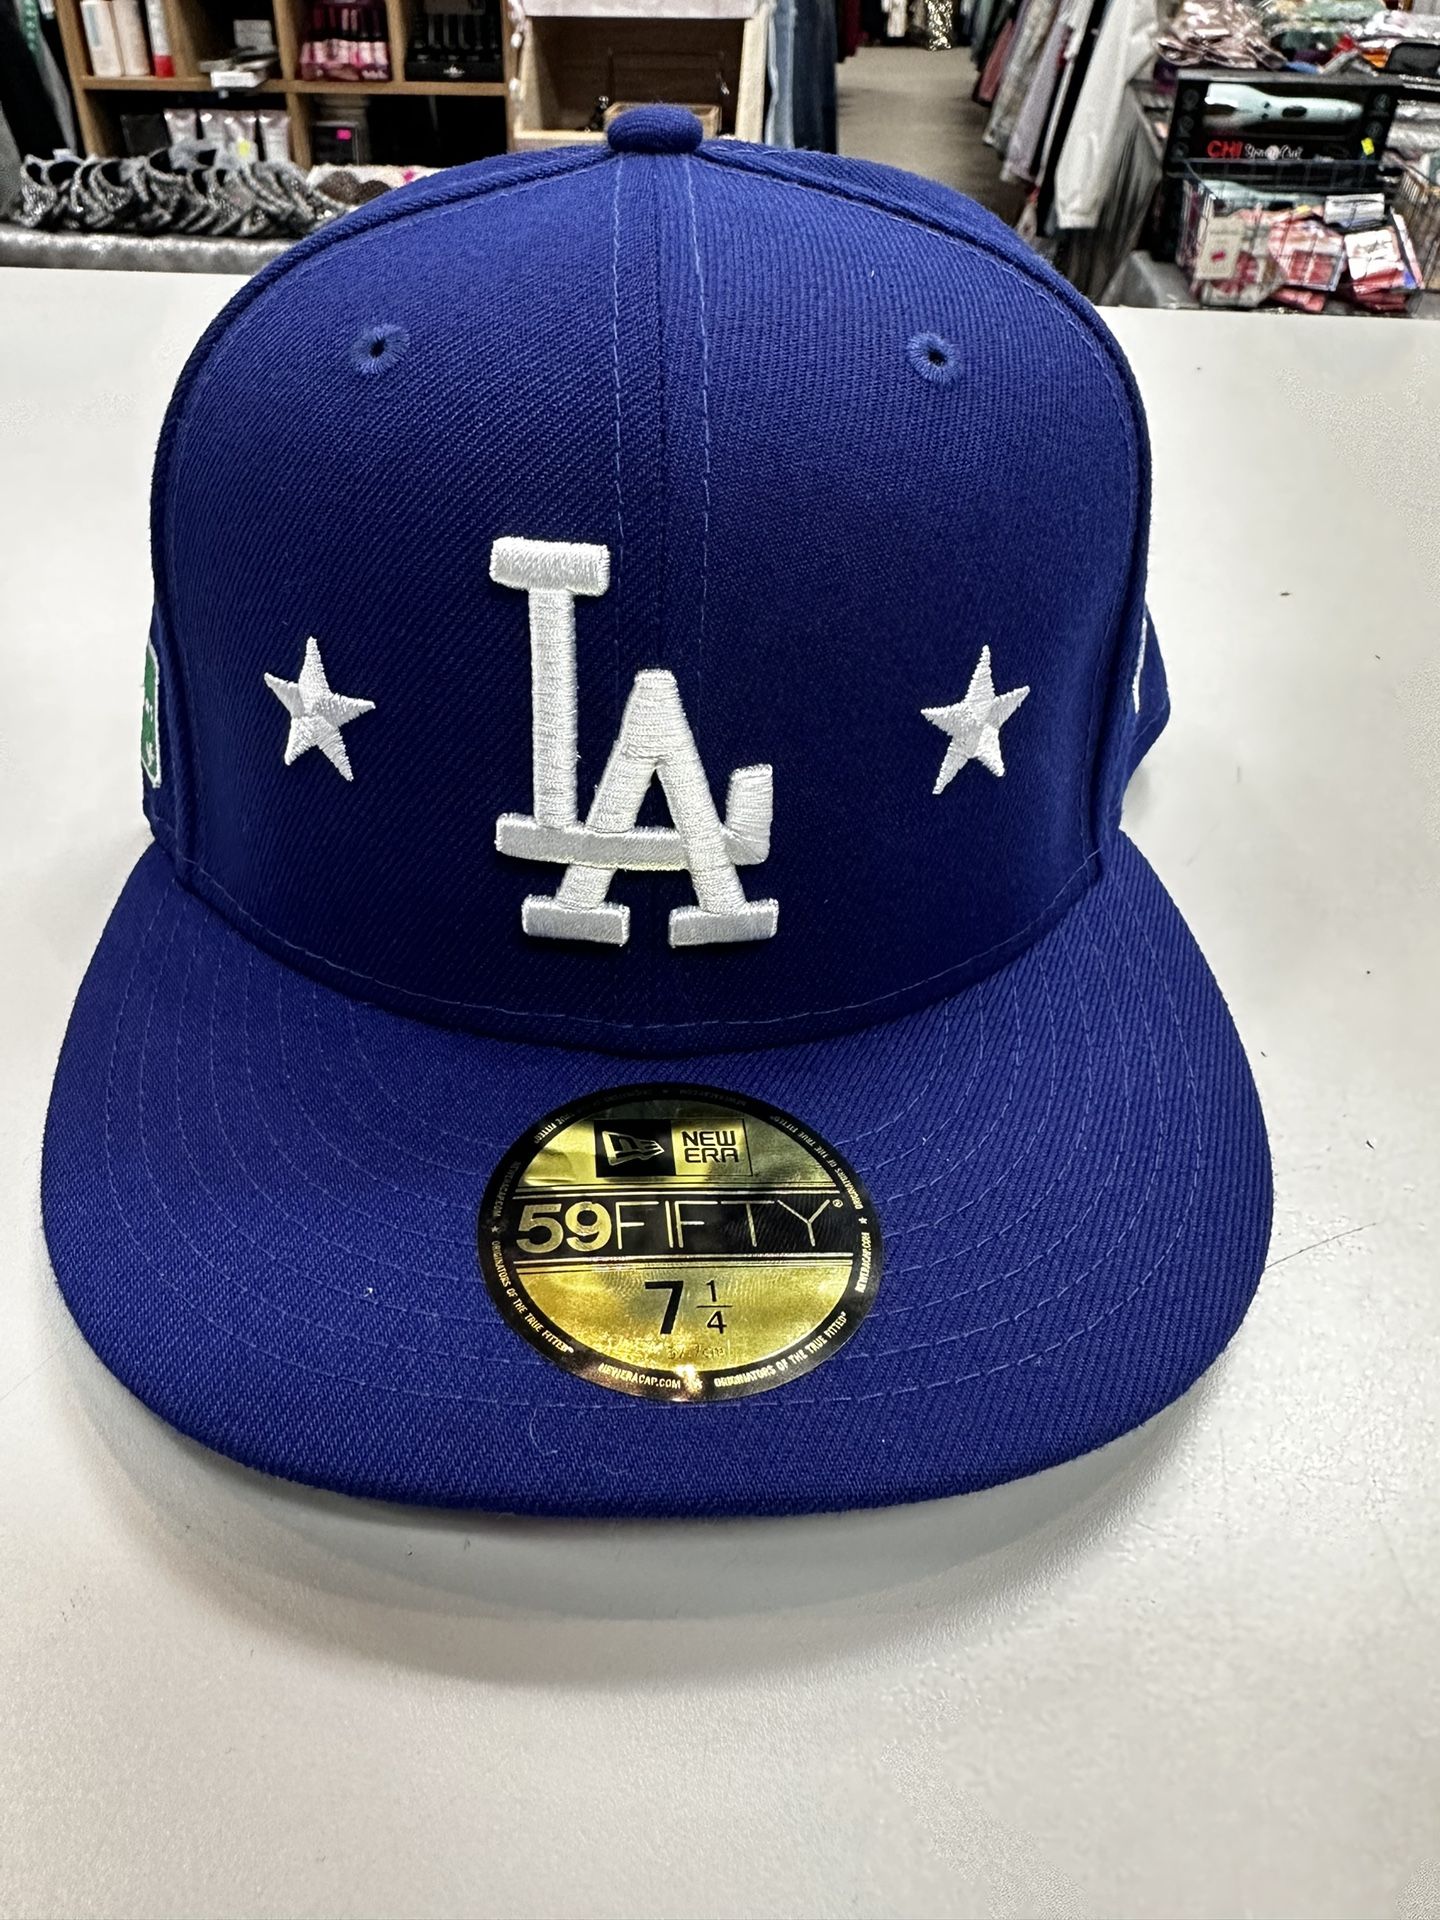 Dodgers Night LA Kings Hat for Sale in Glendale, CA - OfferUp